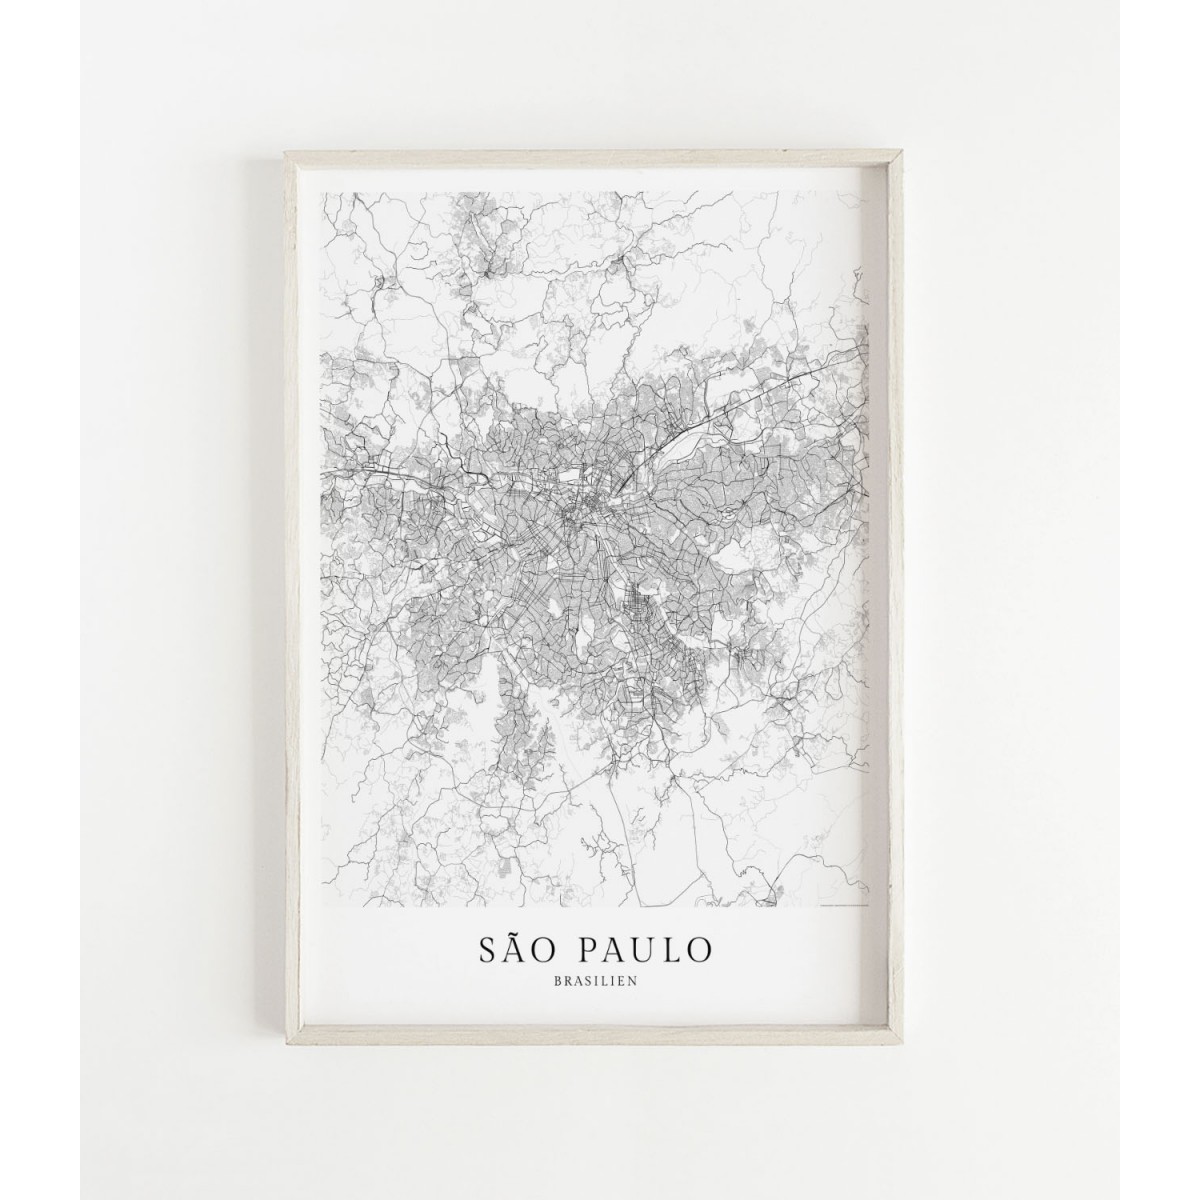 SÃO PAULO als hochwertiges Poster im skandinavischen Stil von Skanemarie